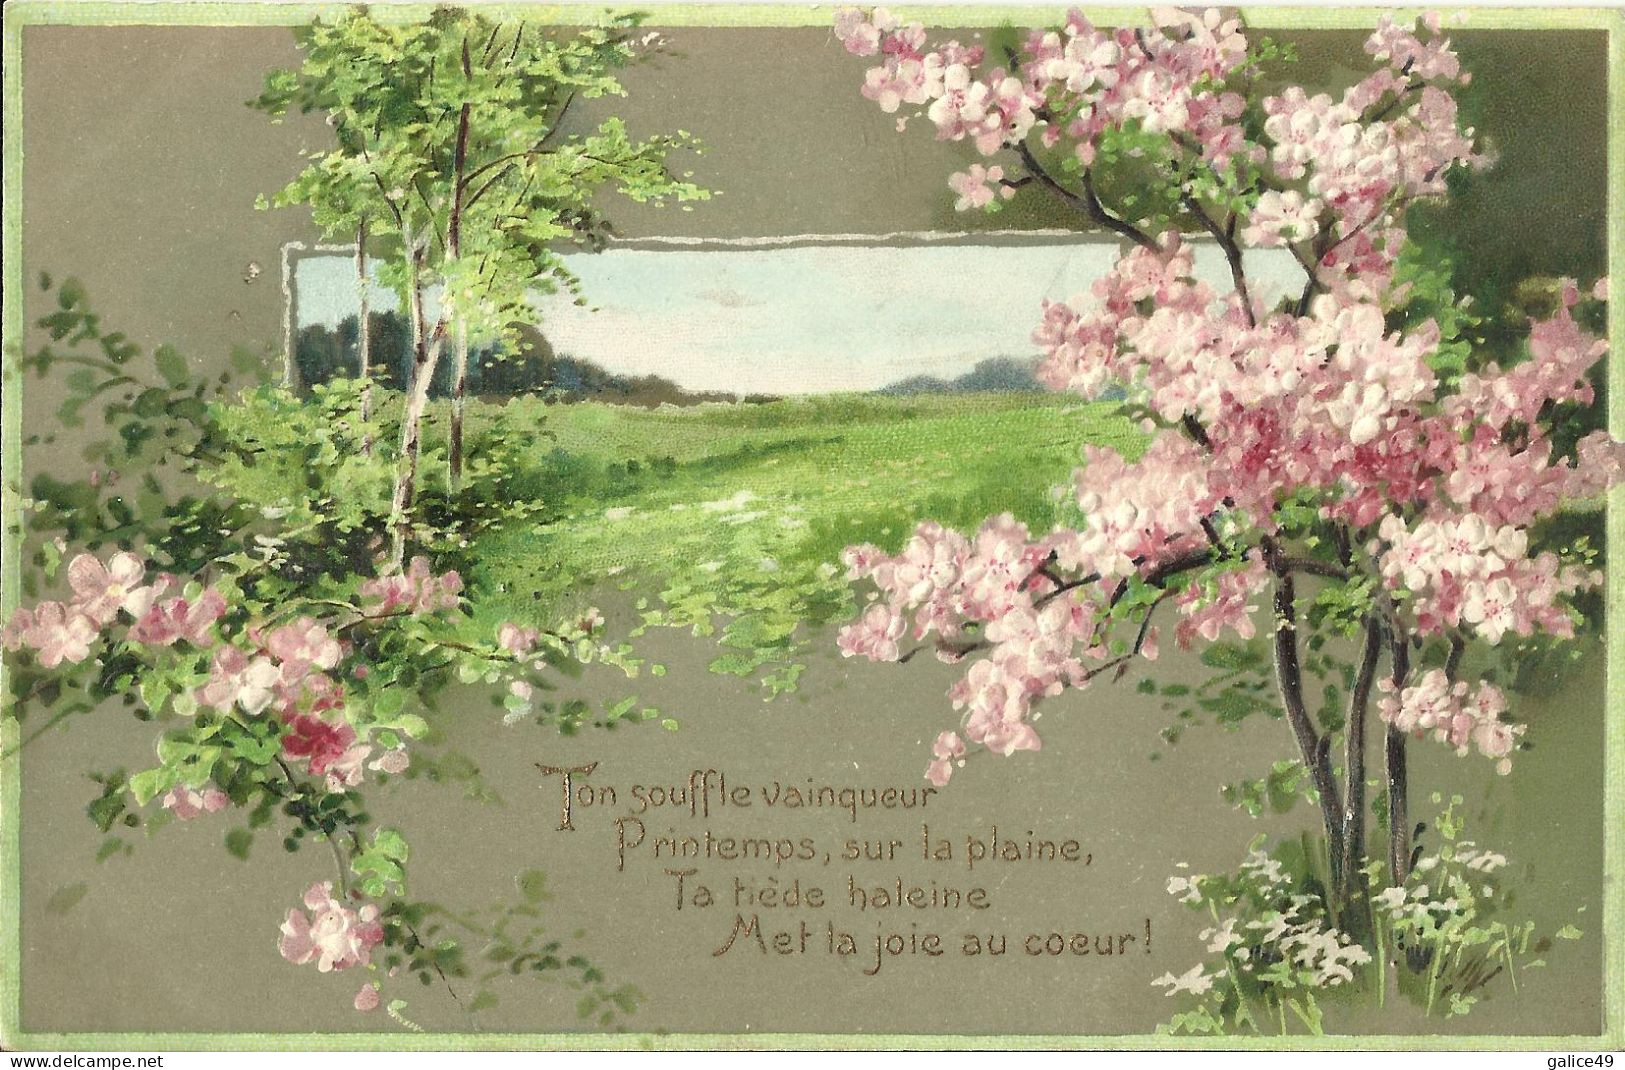 4662 Belle CPA Gaufrée - Fleurs De Pommier Finement Gaufrées - Paysage Printanier - Trees